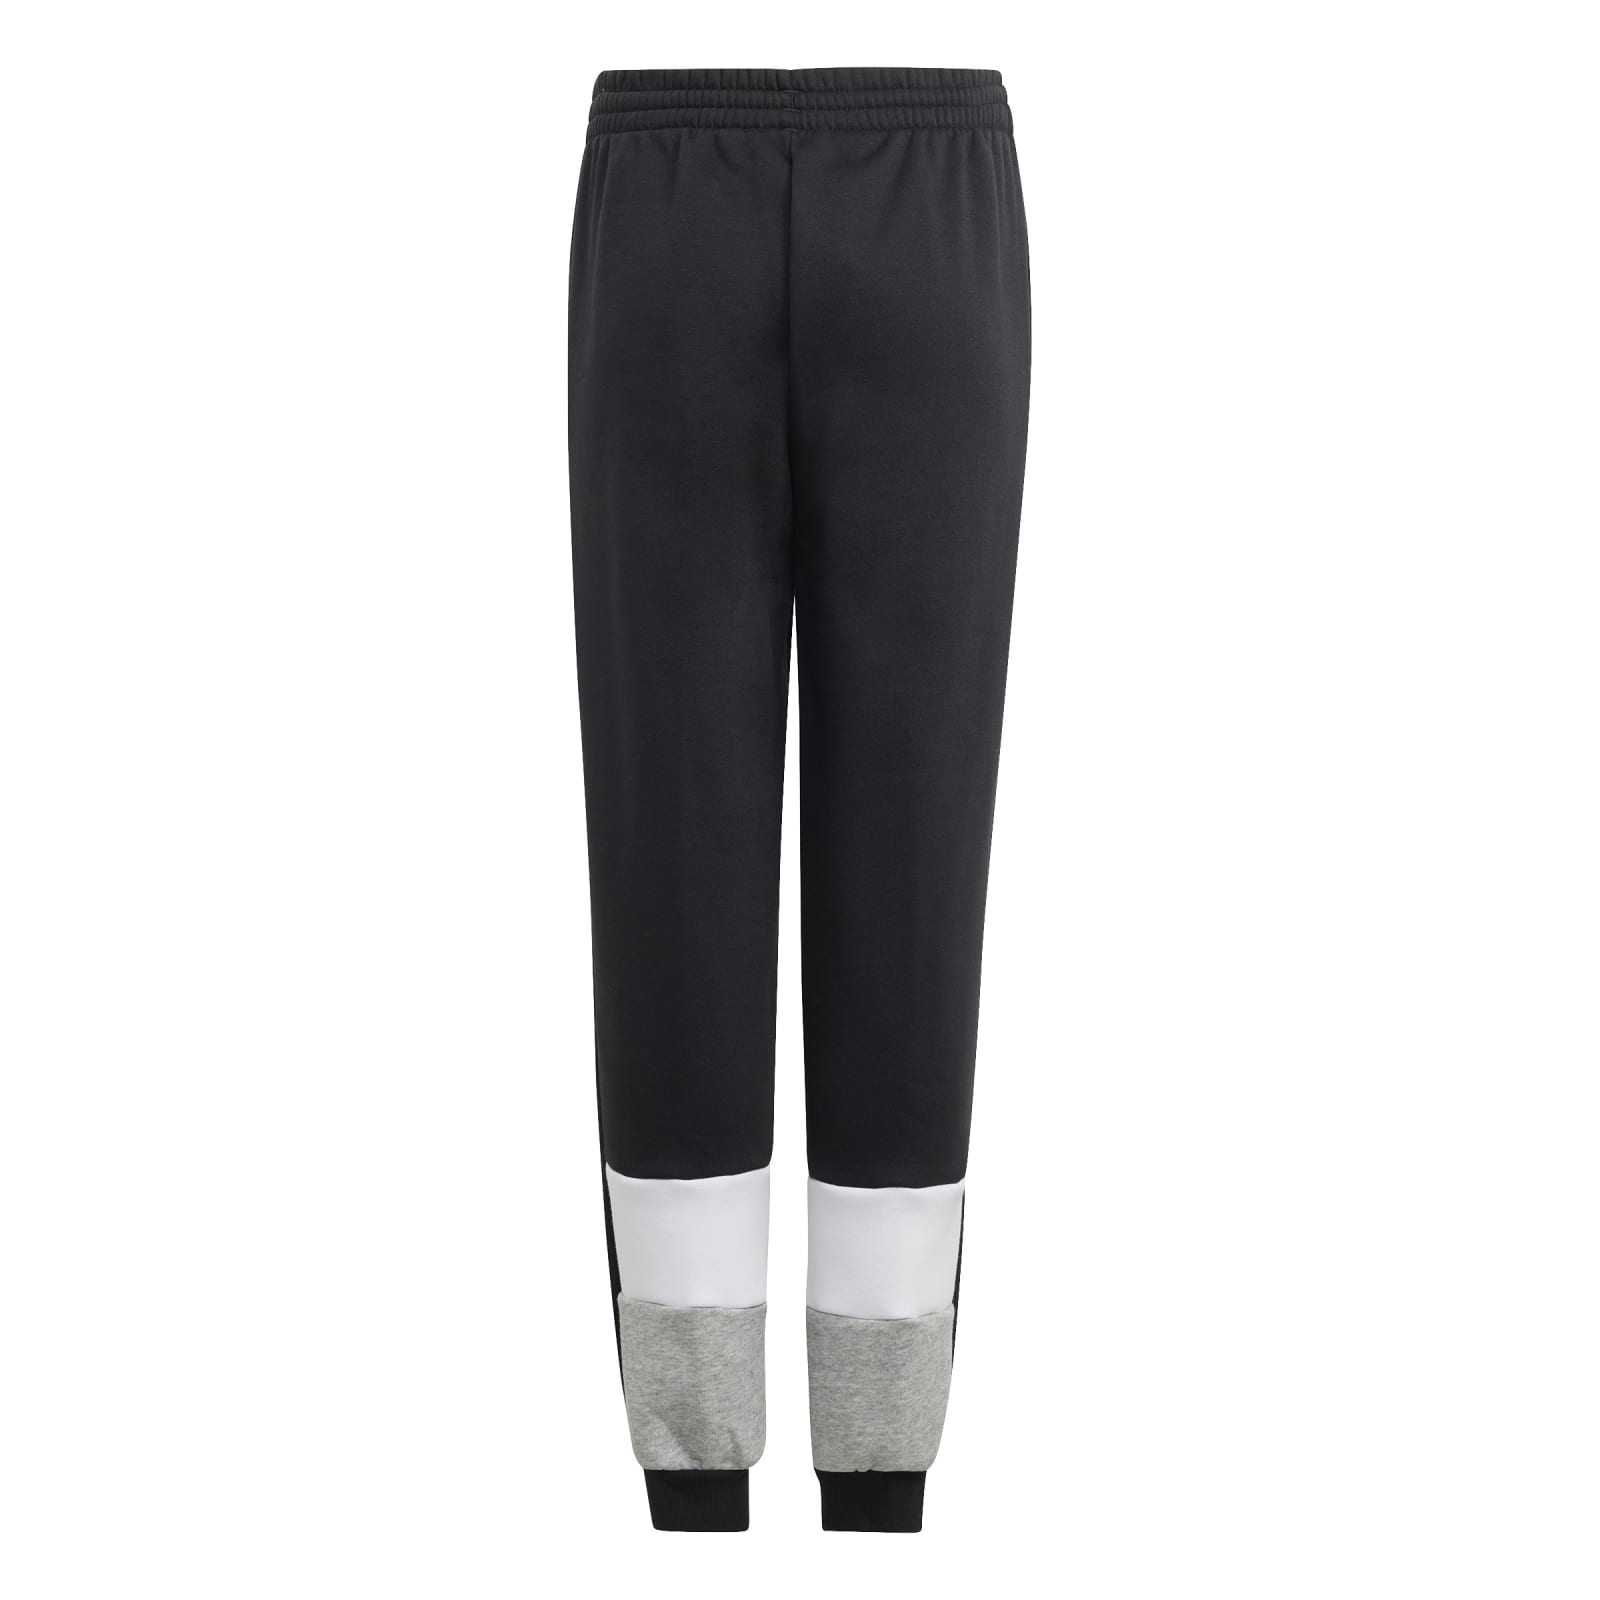 Trainingsanzug (Baumwollmix) adidas Colourblock Fleece schwarz/grau Jungen bestellen online